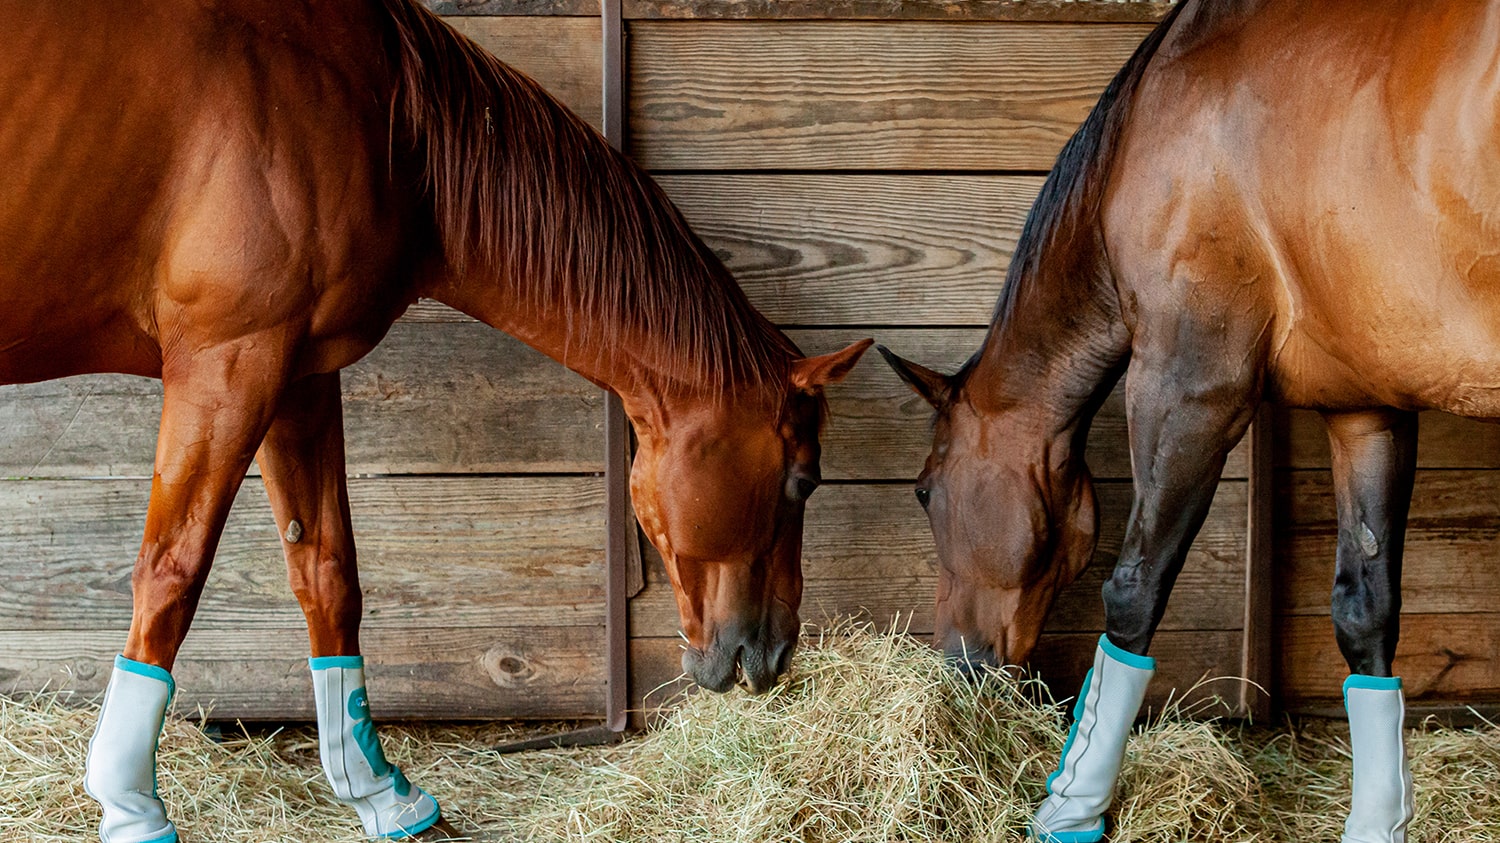 two brown horses eating hay in barn